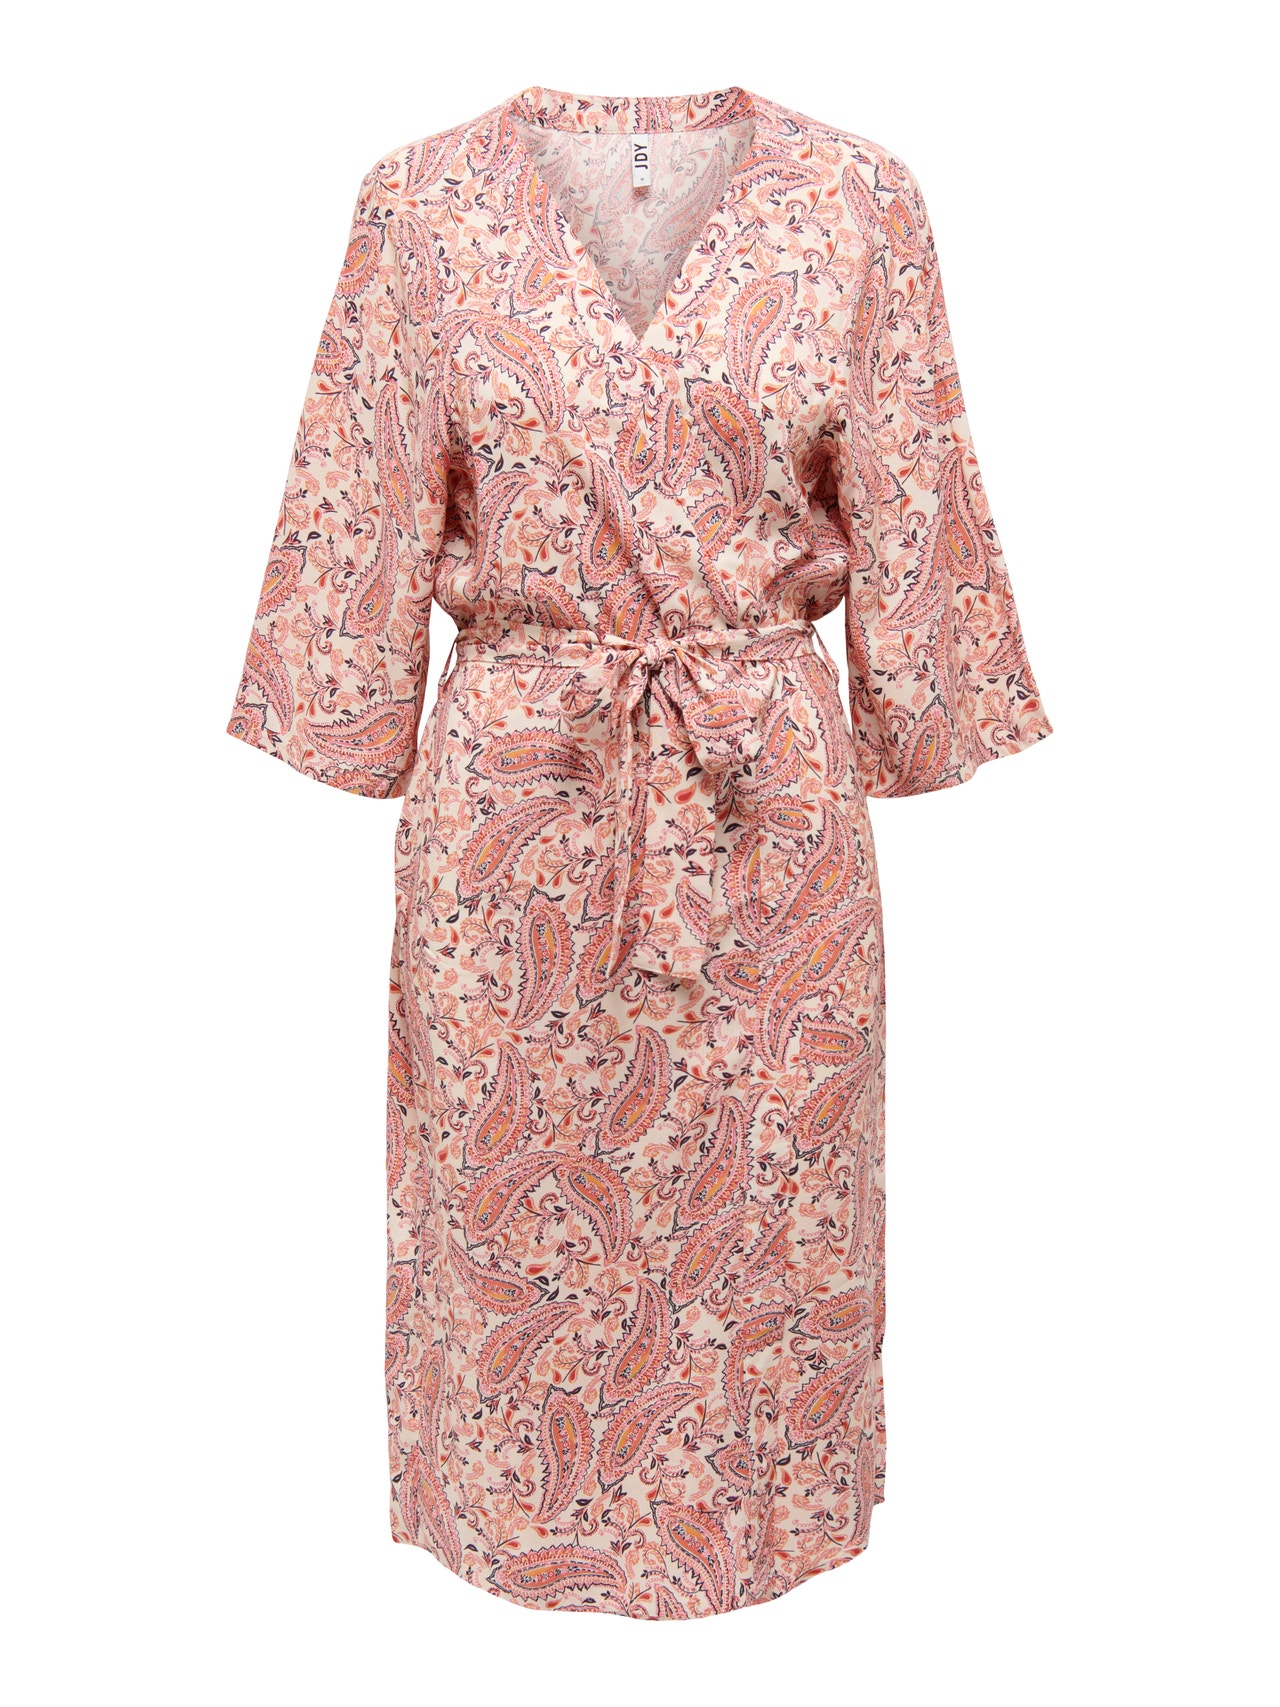 ONLY Long 3/4 sleeved Kimono -Sandshell - 15248834